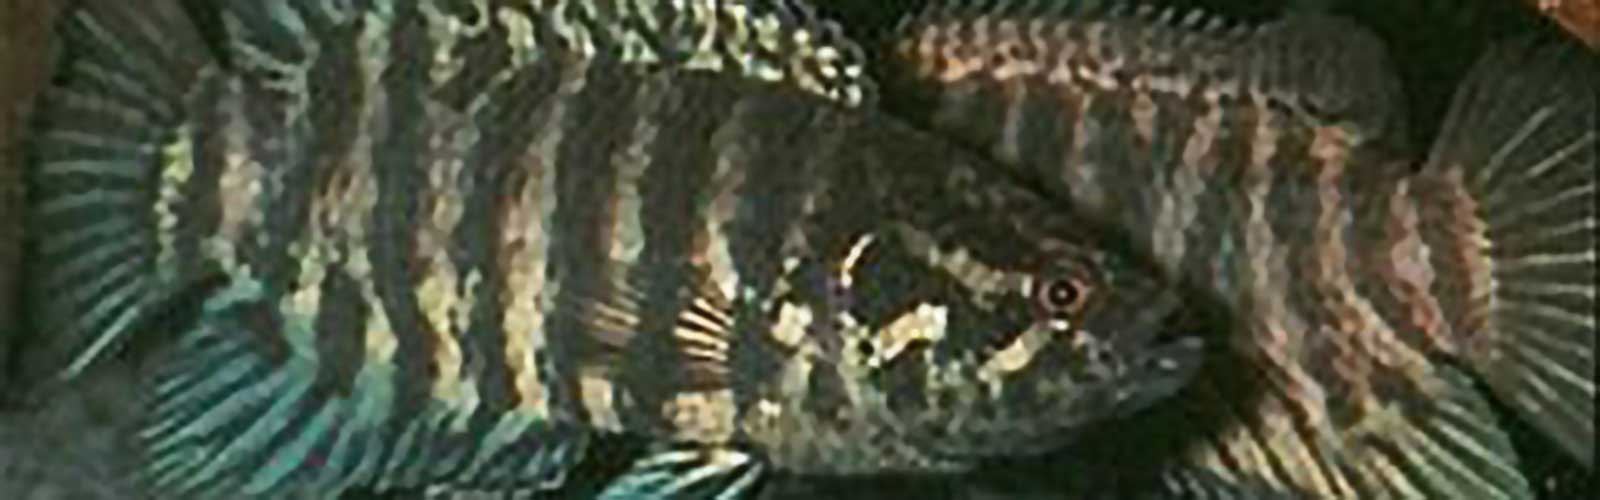 Microctenopoma congicum - Kongói bozóthal fejkép